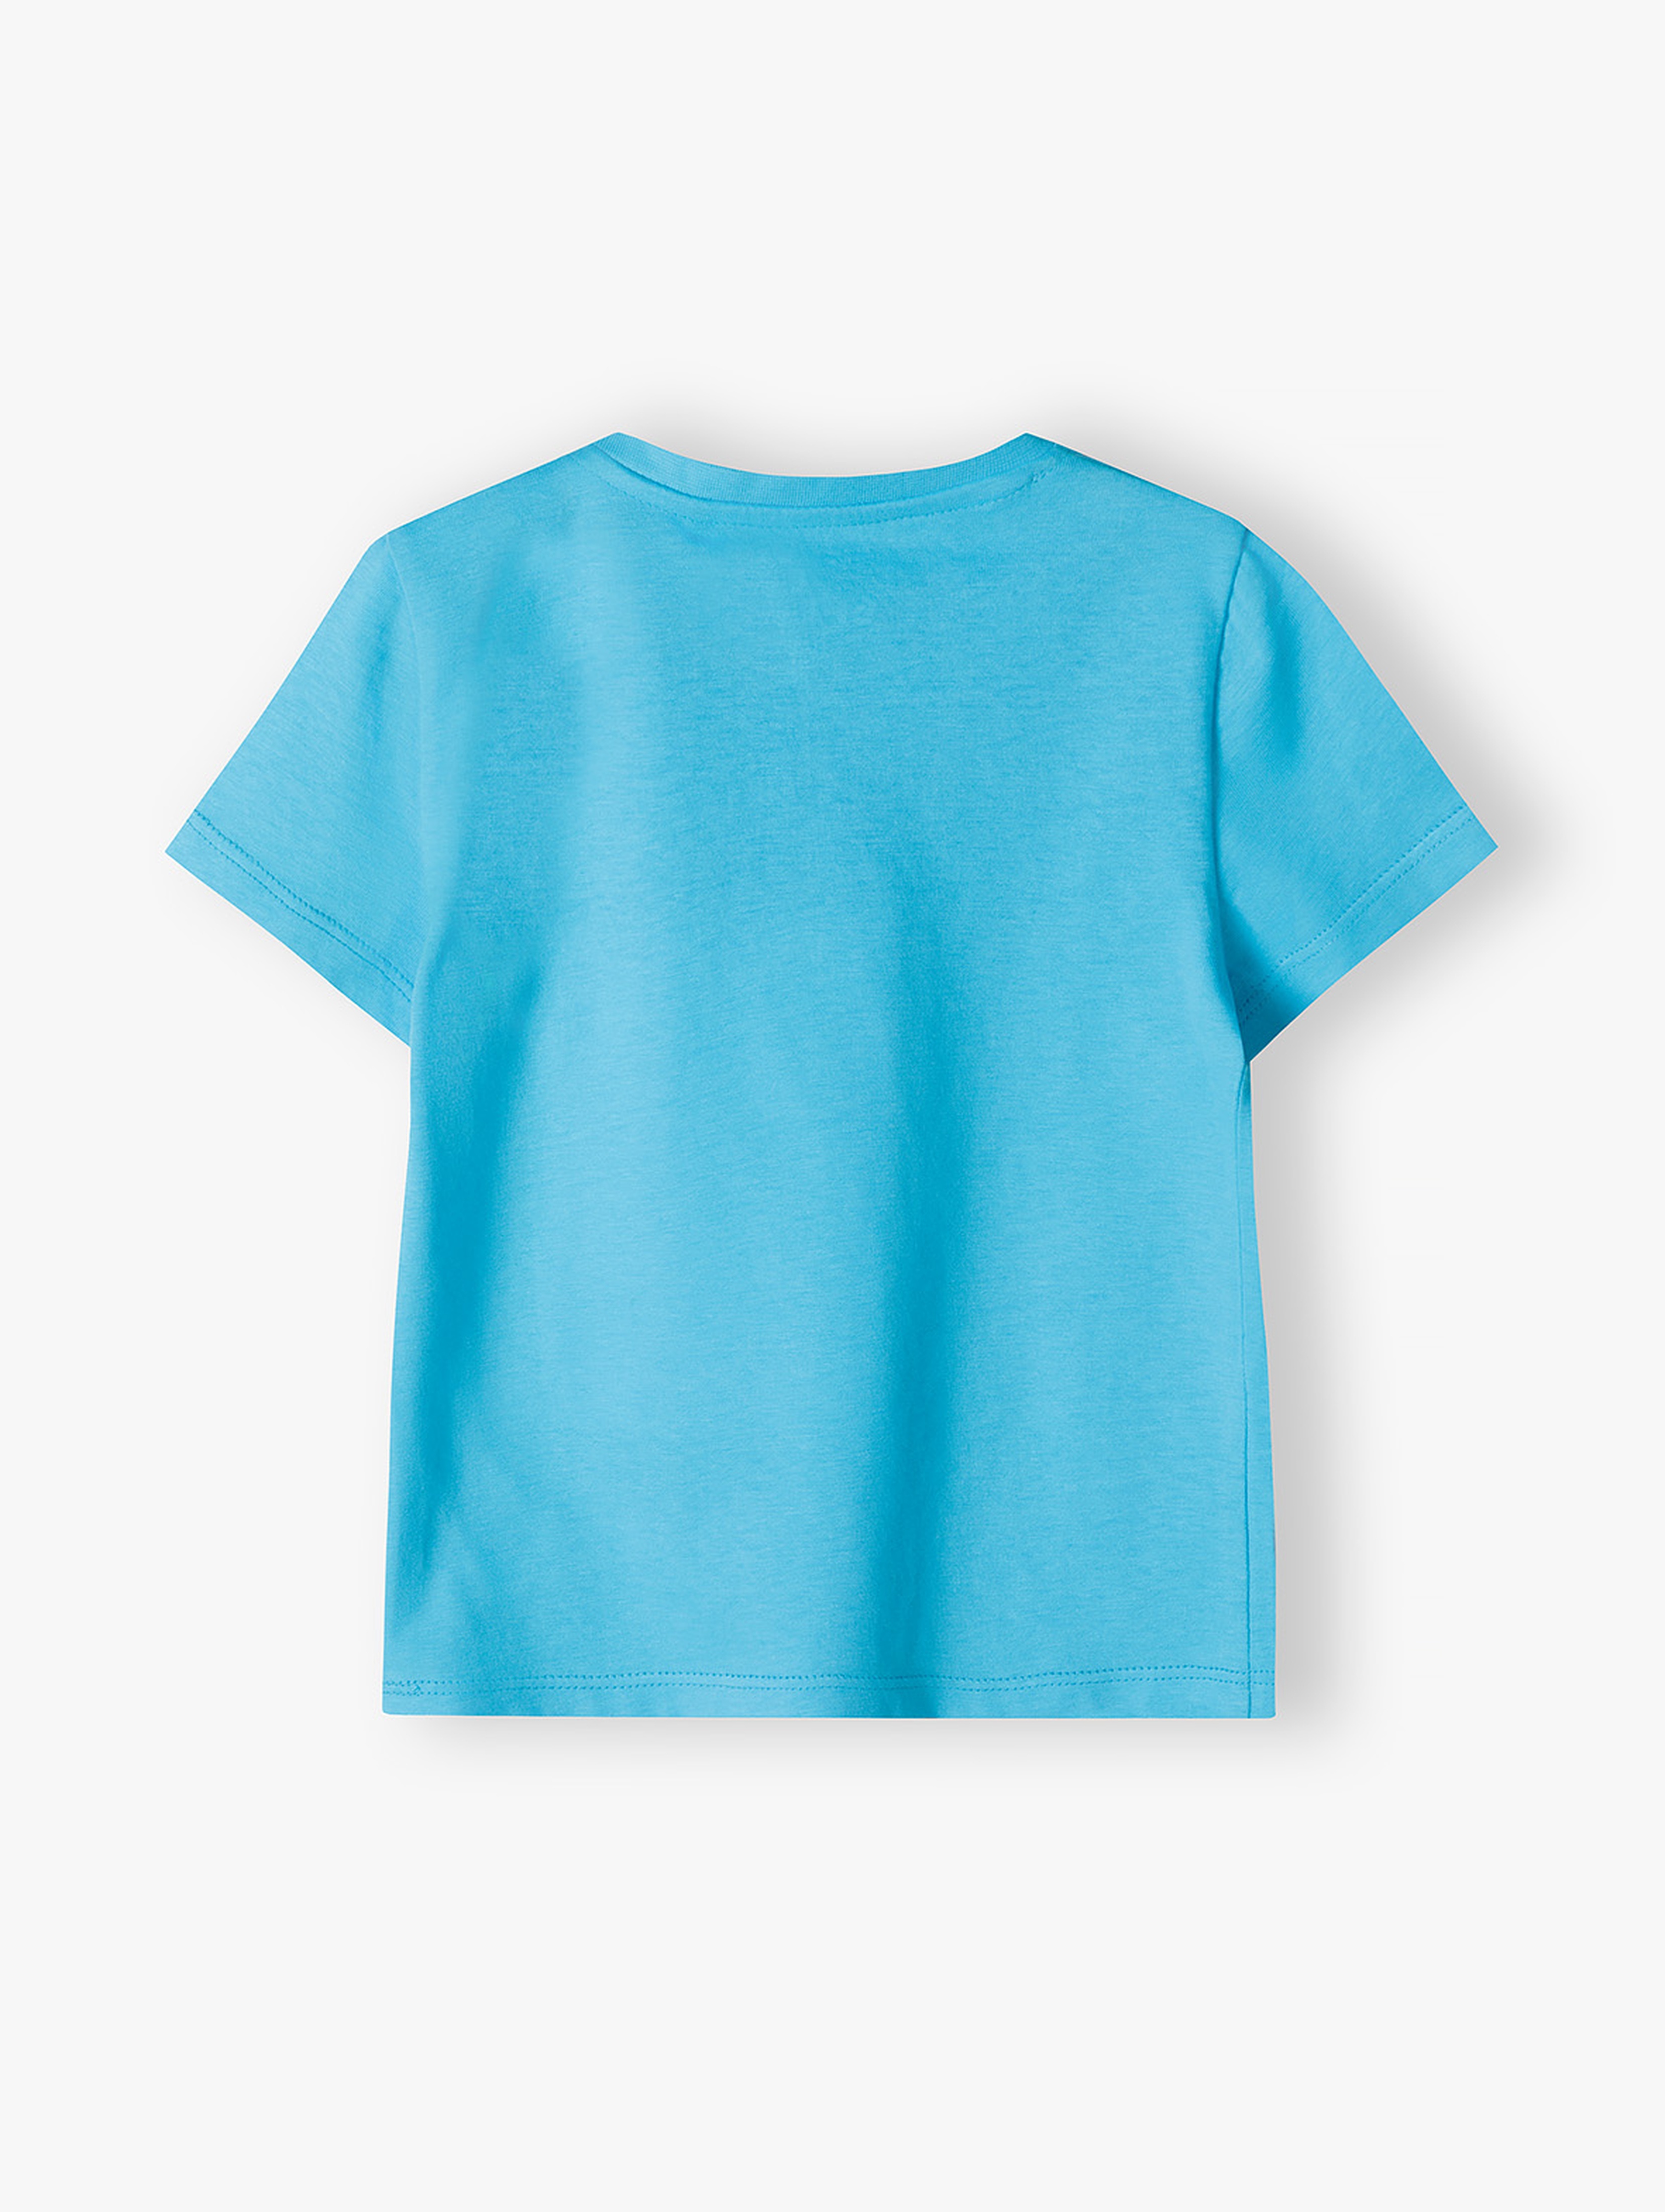 Niebieski bawełniany t-shirt niemowlęcy - ŁOBUZIAK